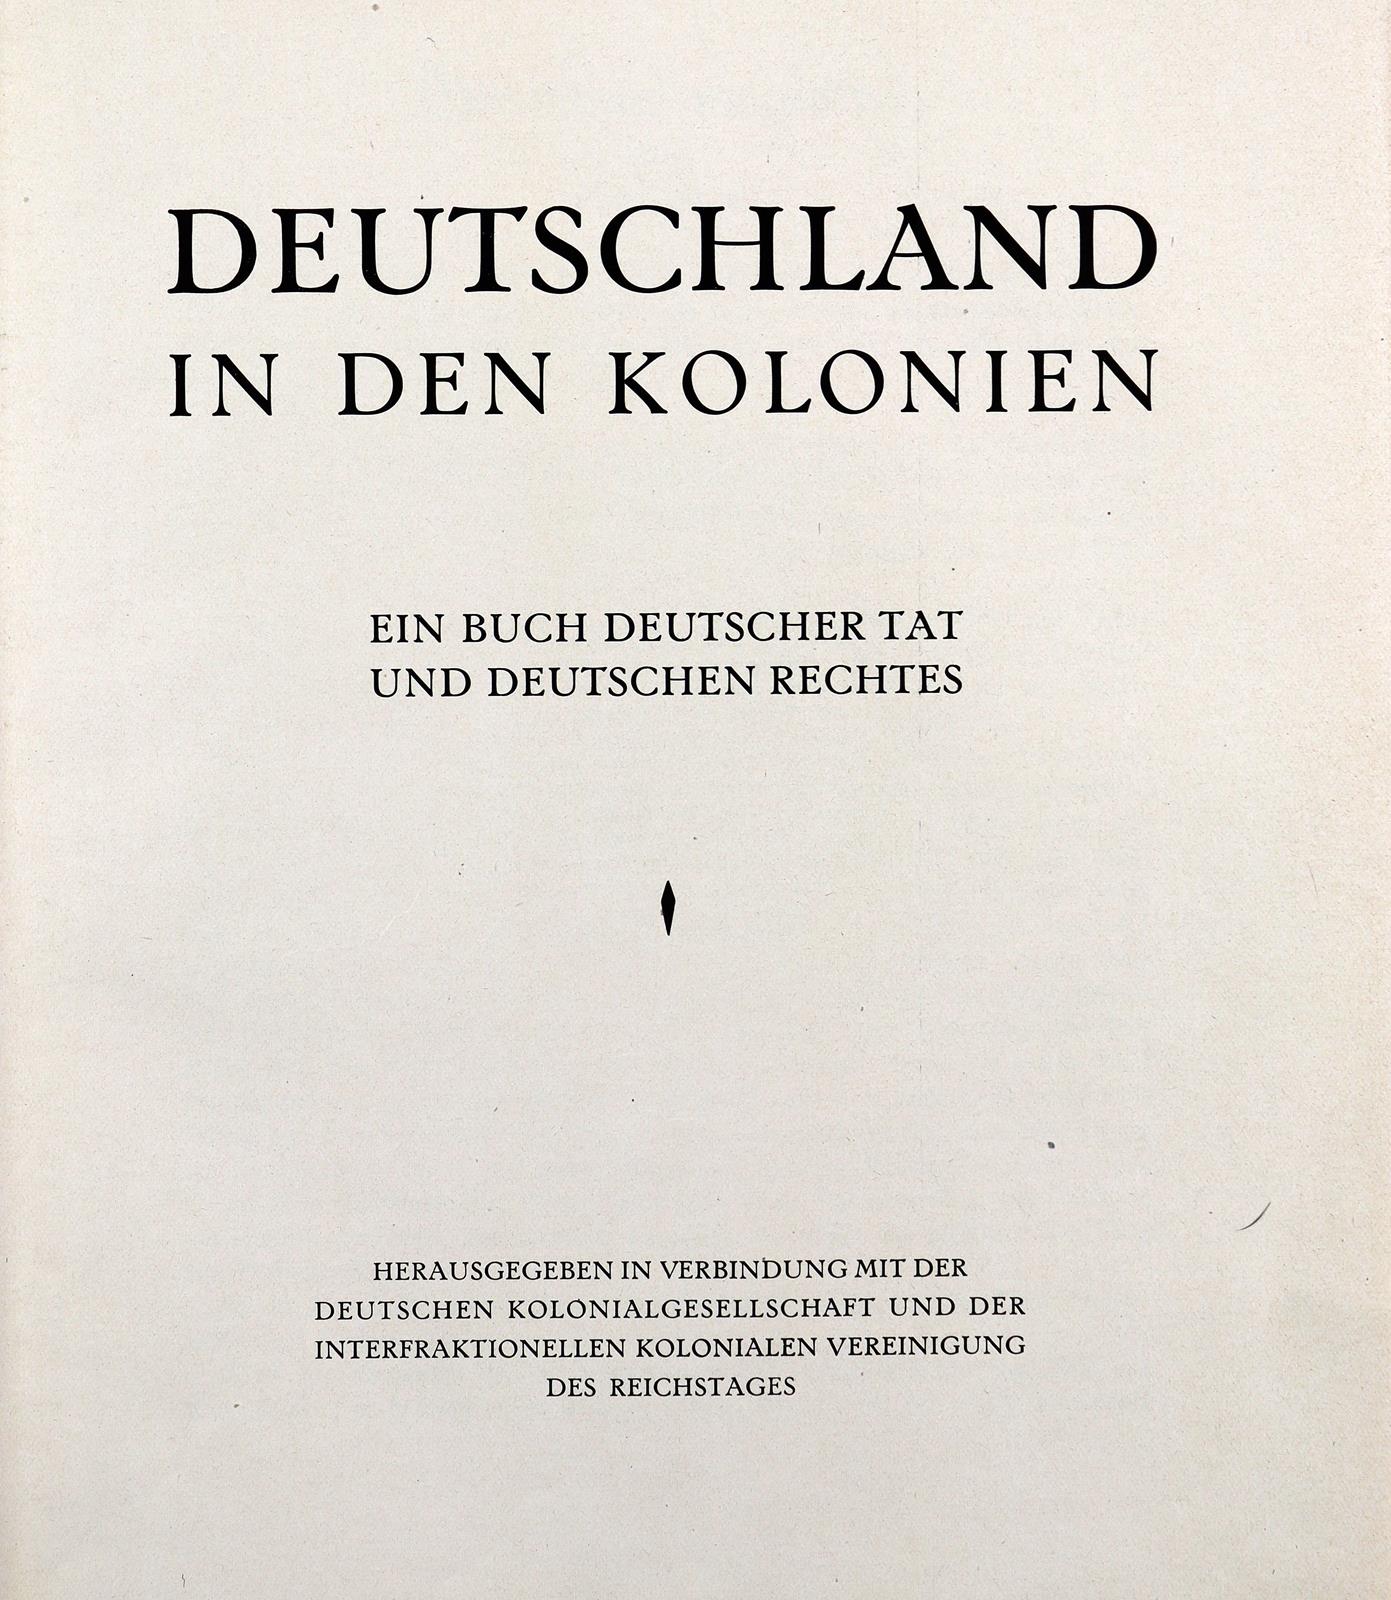 Kolonie und Zeitung. - Image 2 of 3